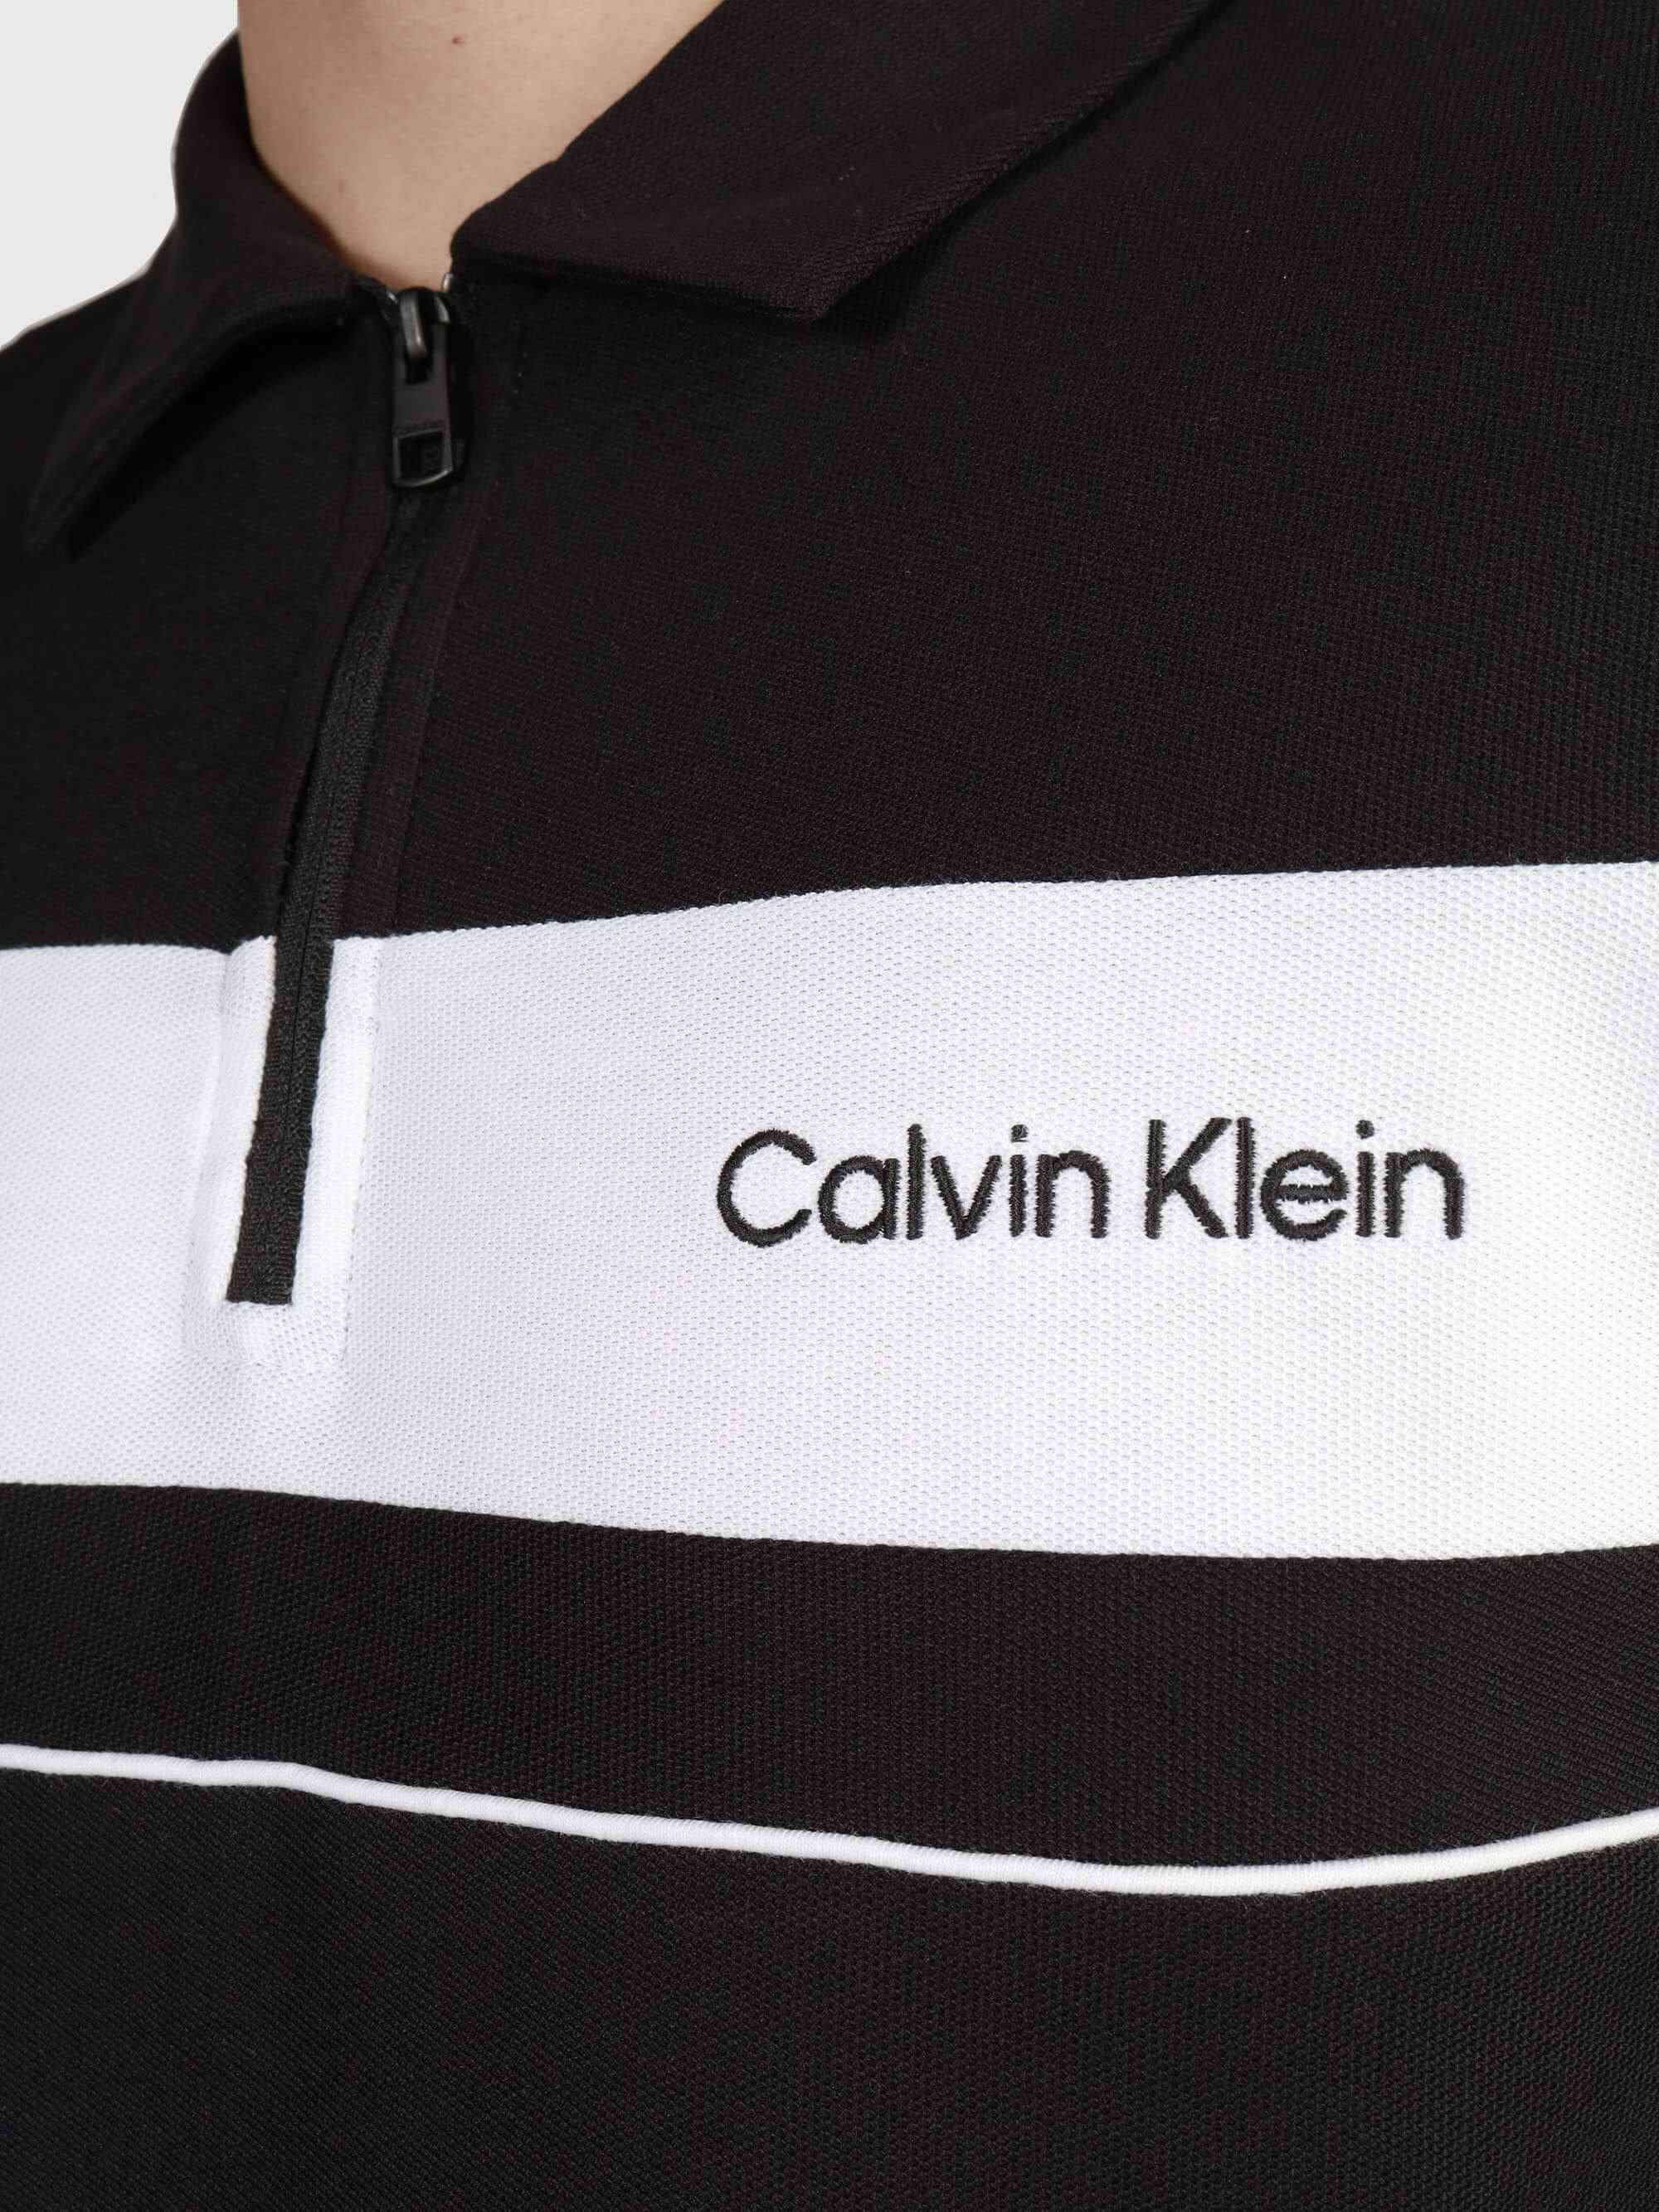 Polo Calvin Klein Hombre Negro